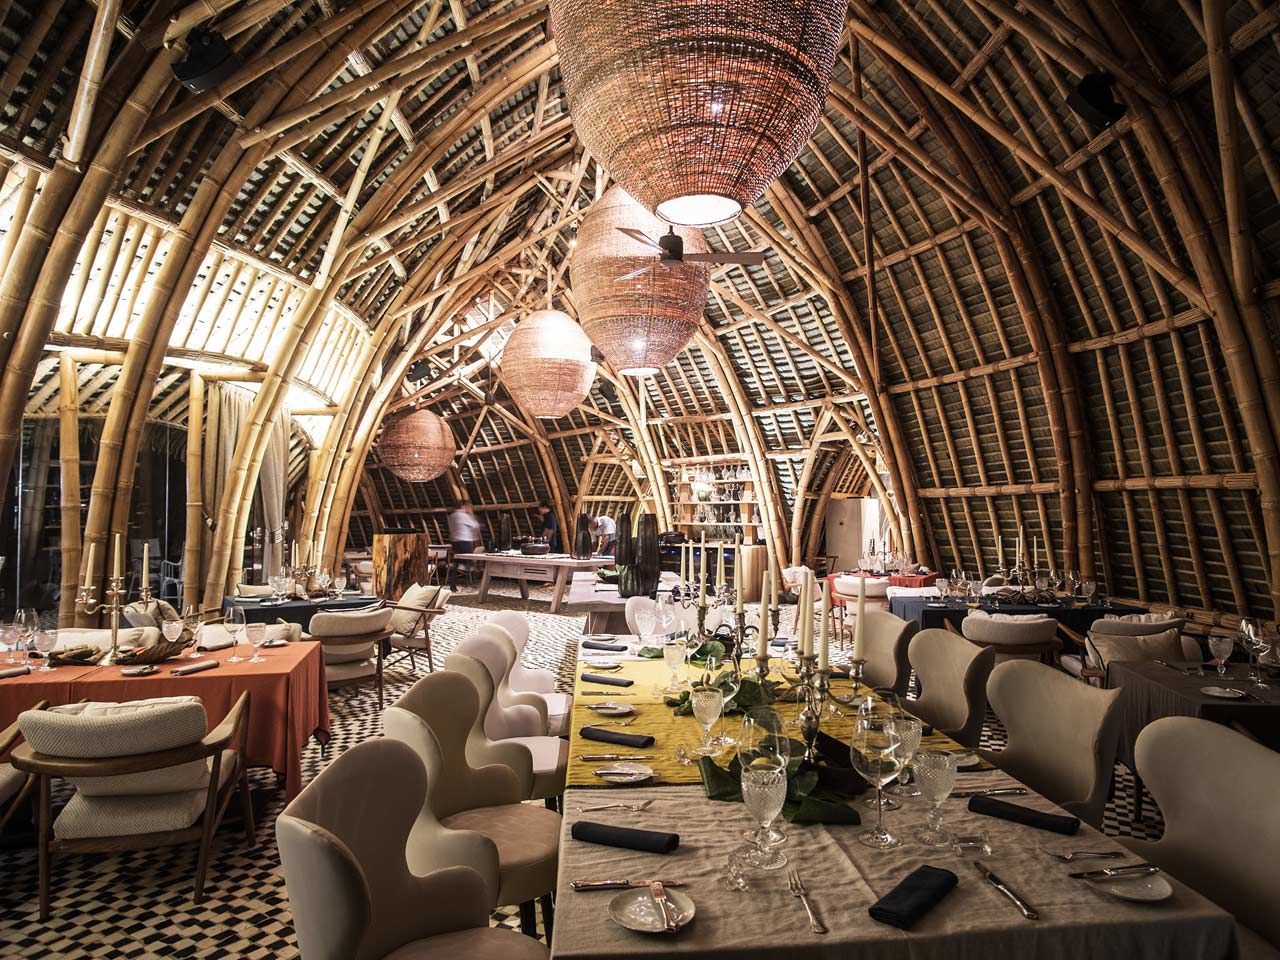 Hình ảnh thiết kế nhà hàng bằng tre mái vòm